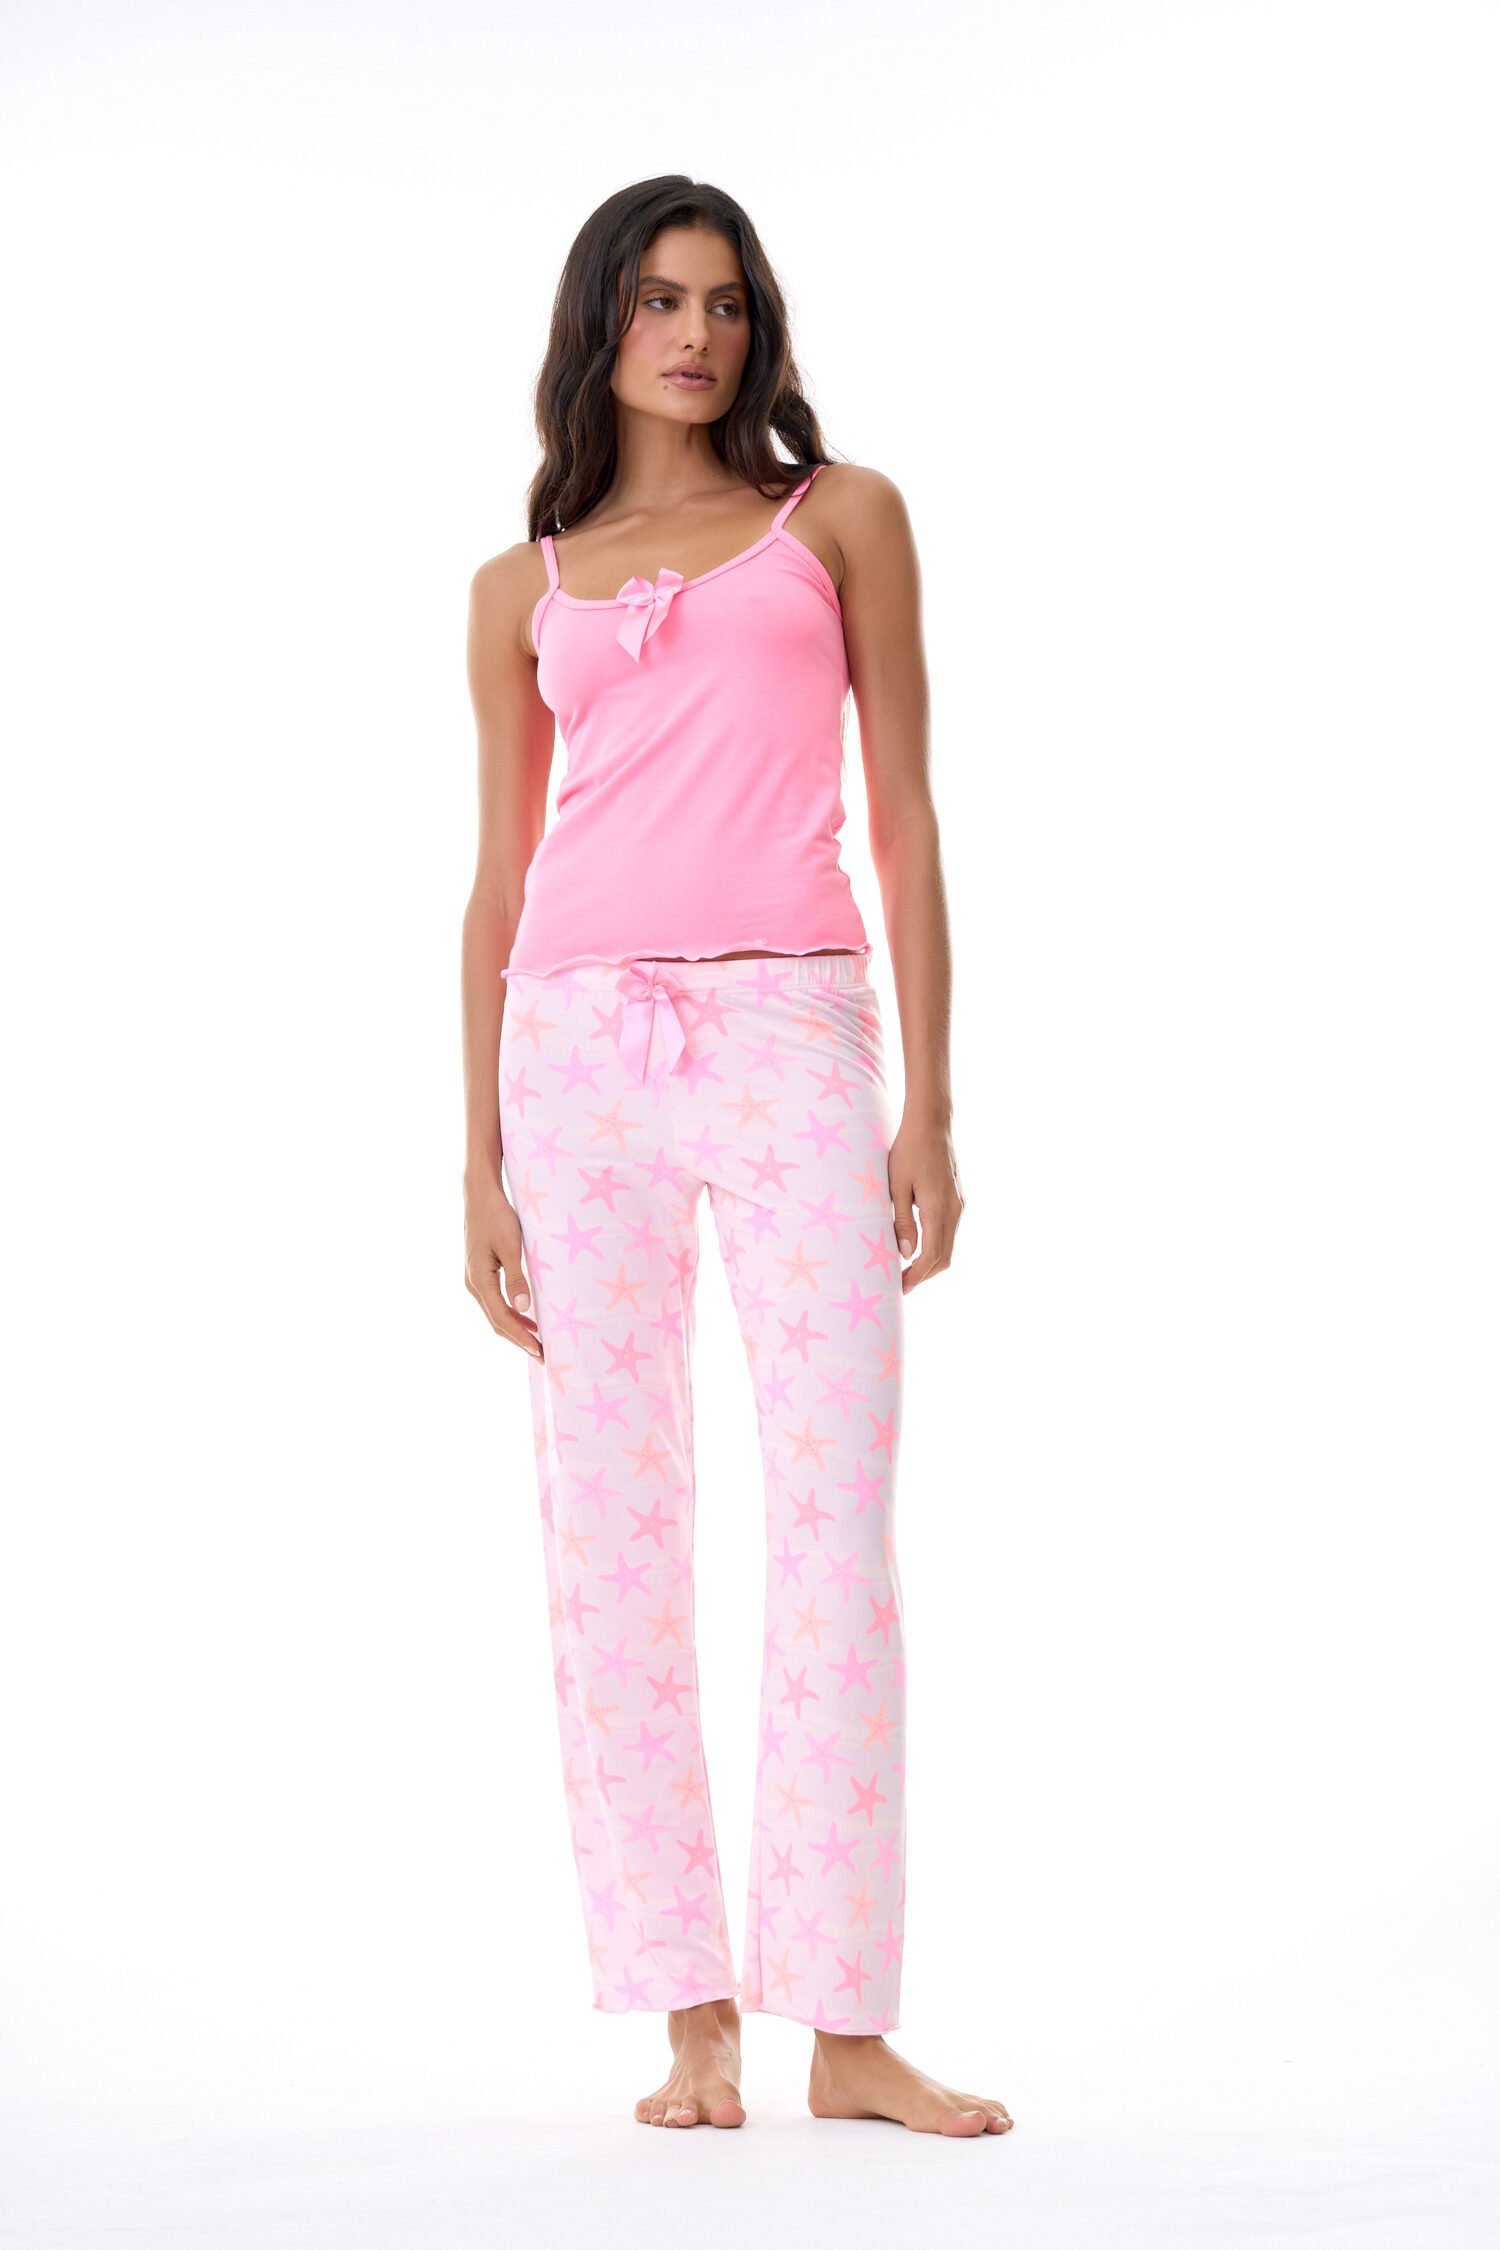 Imagen del producto: Conjunto pantalón rosado estrellas de mar blusa rosada